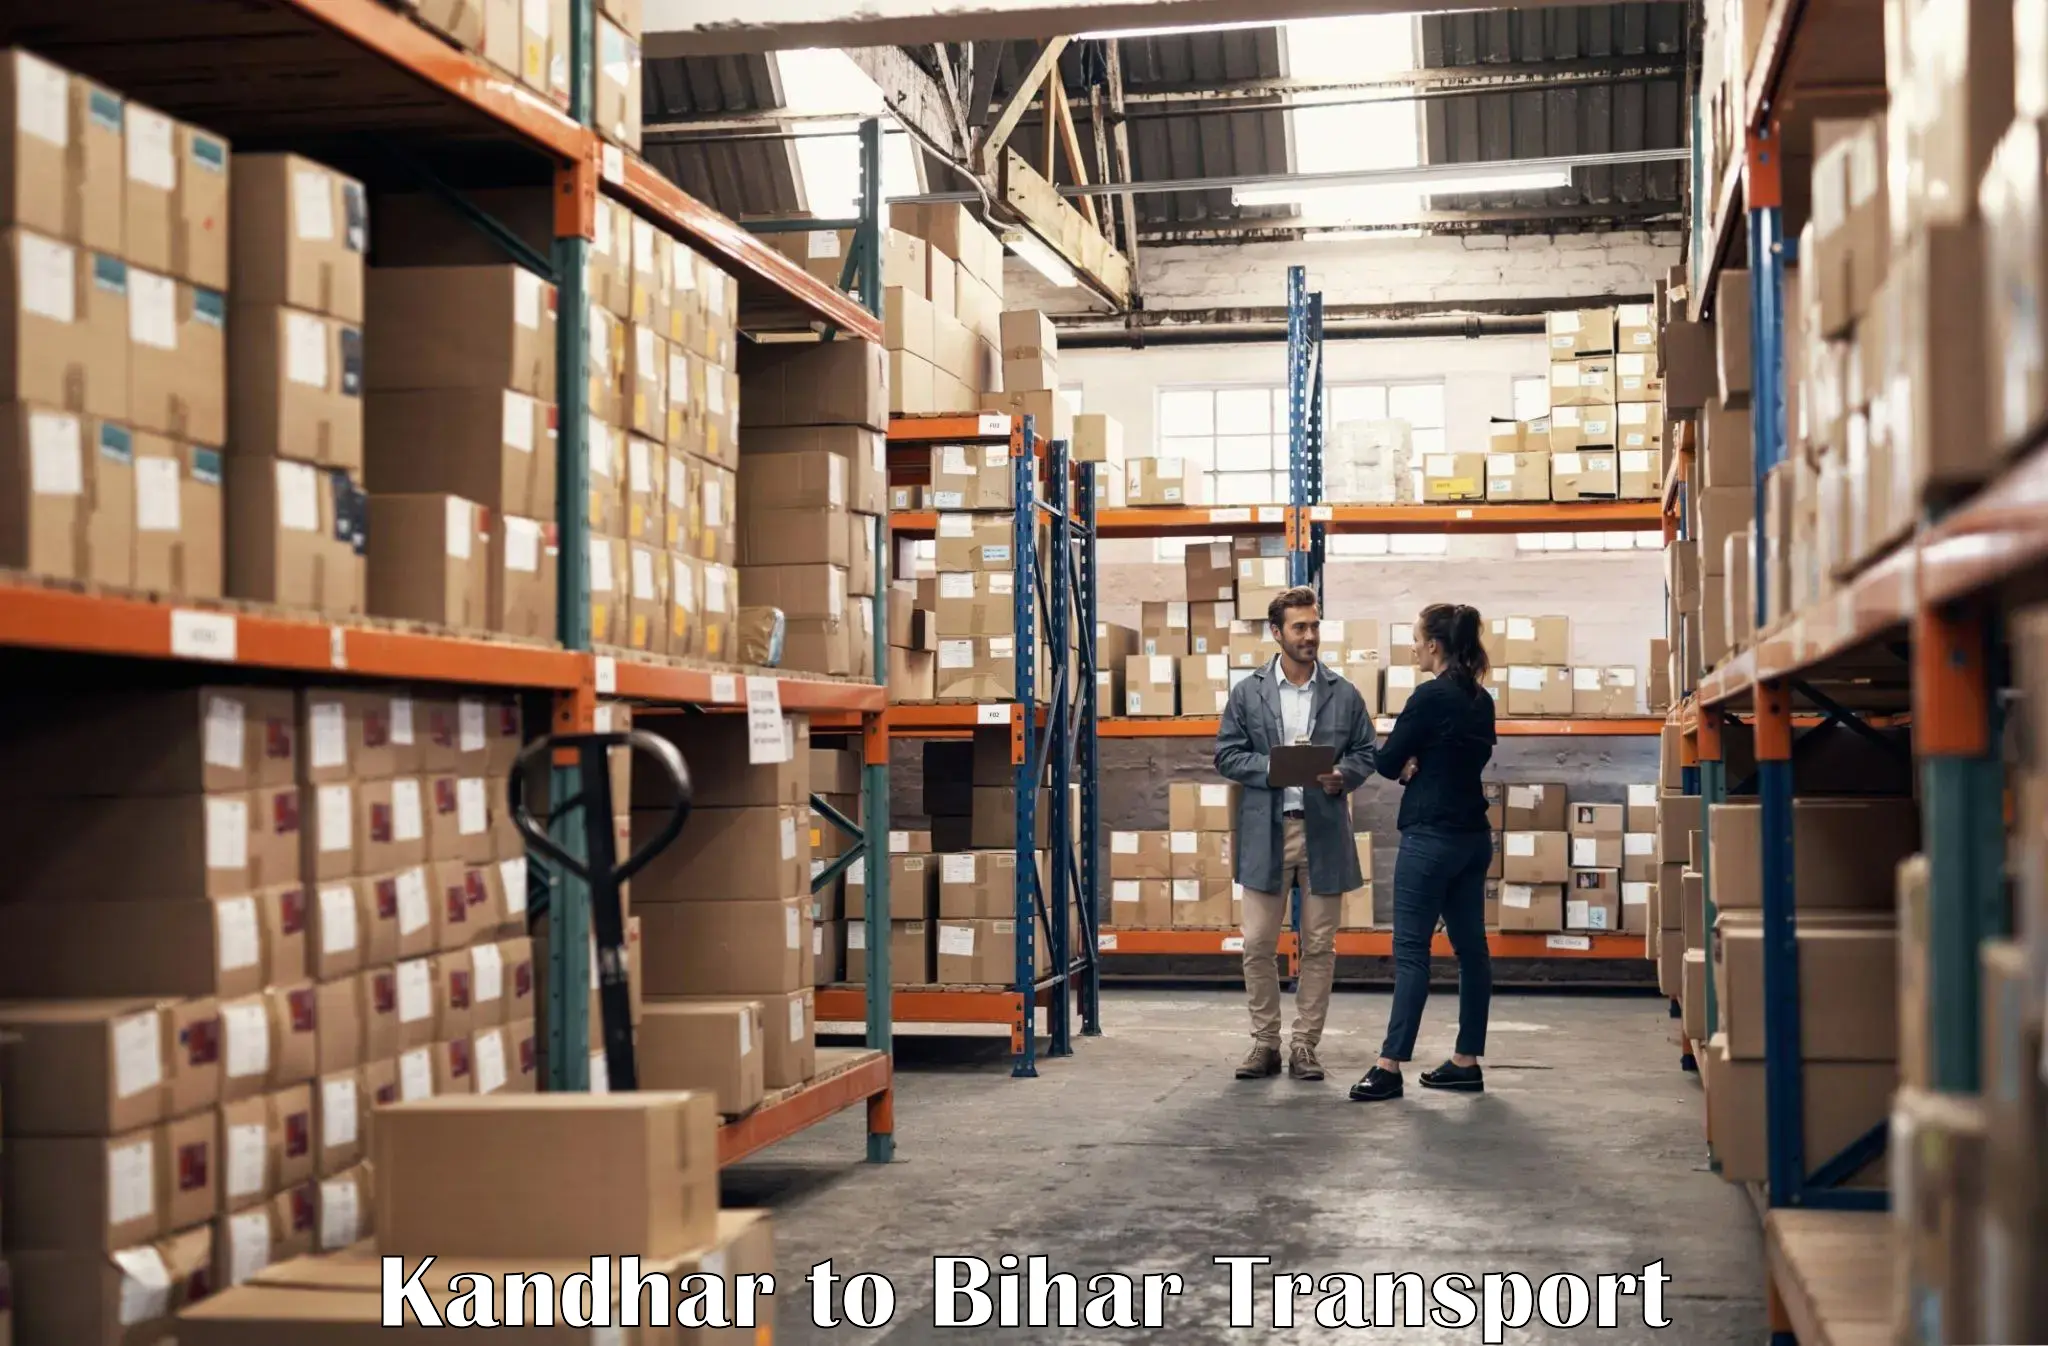 Daily parcel service transport Kandhar to Sangrampur